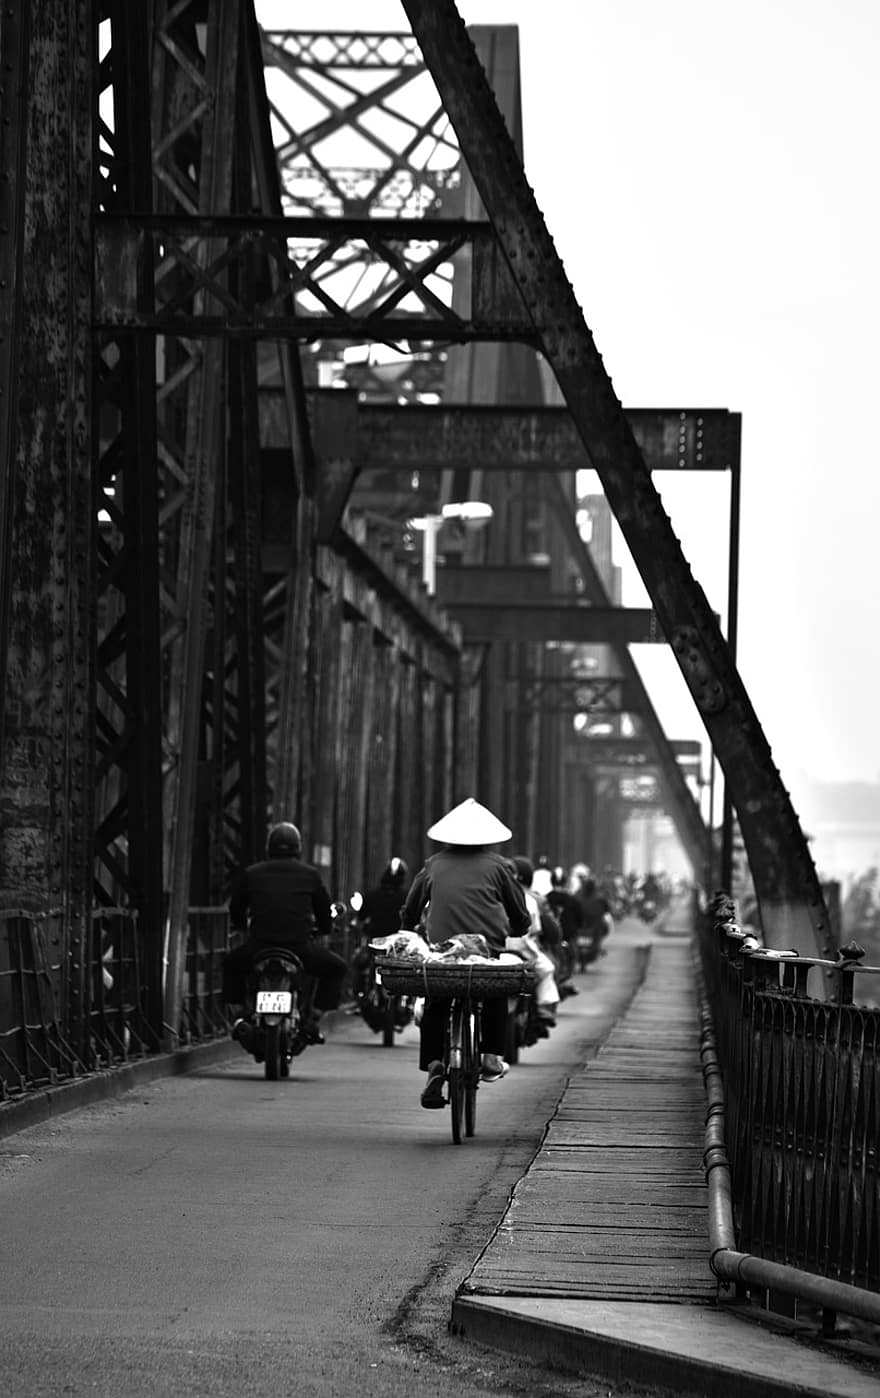 Bridge, Iron, Lane, Bicycle Lane, Path, Way, Avenue, Motorcycles, Motorcycle Lane, Riders, People